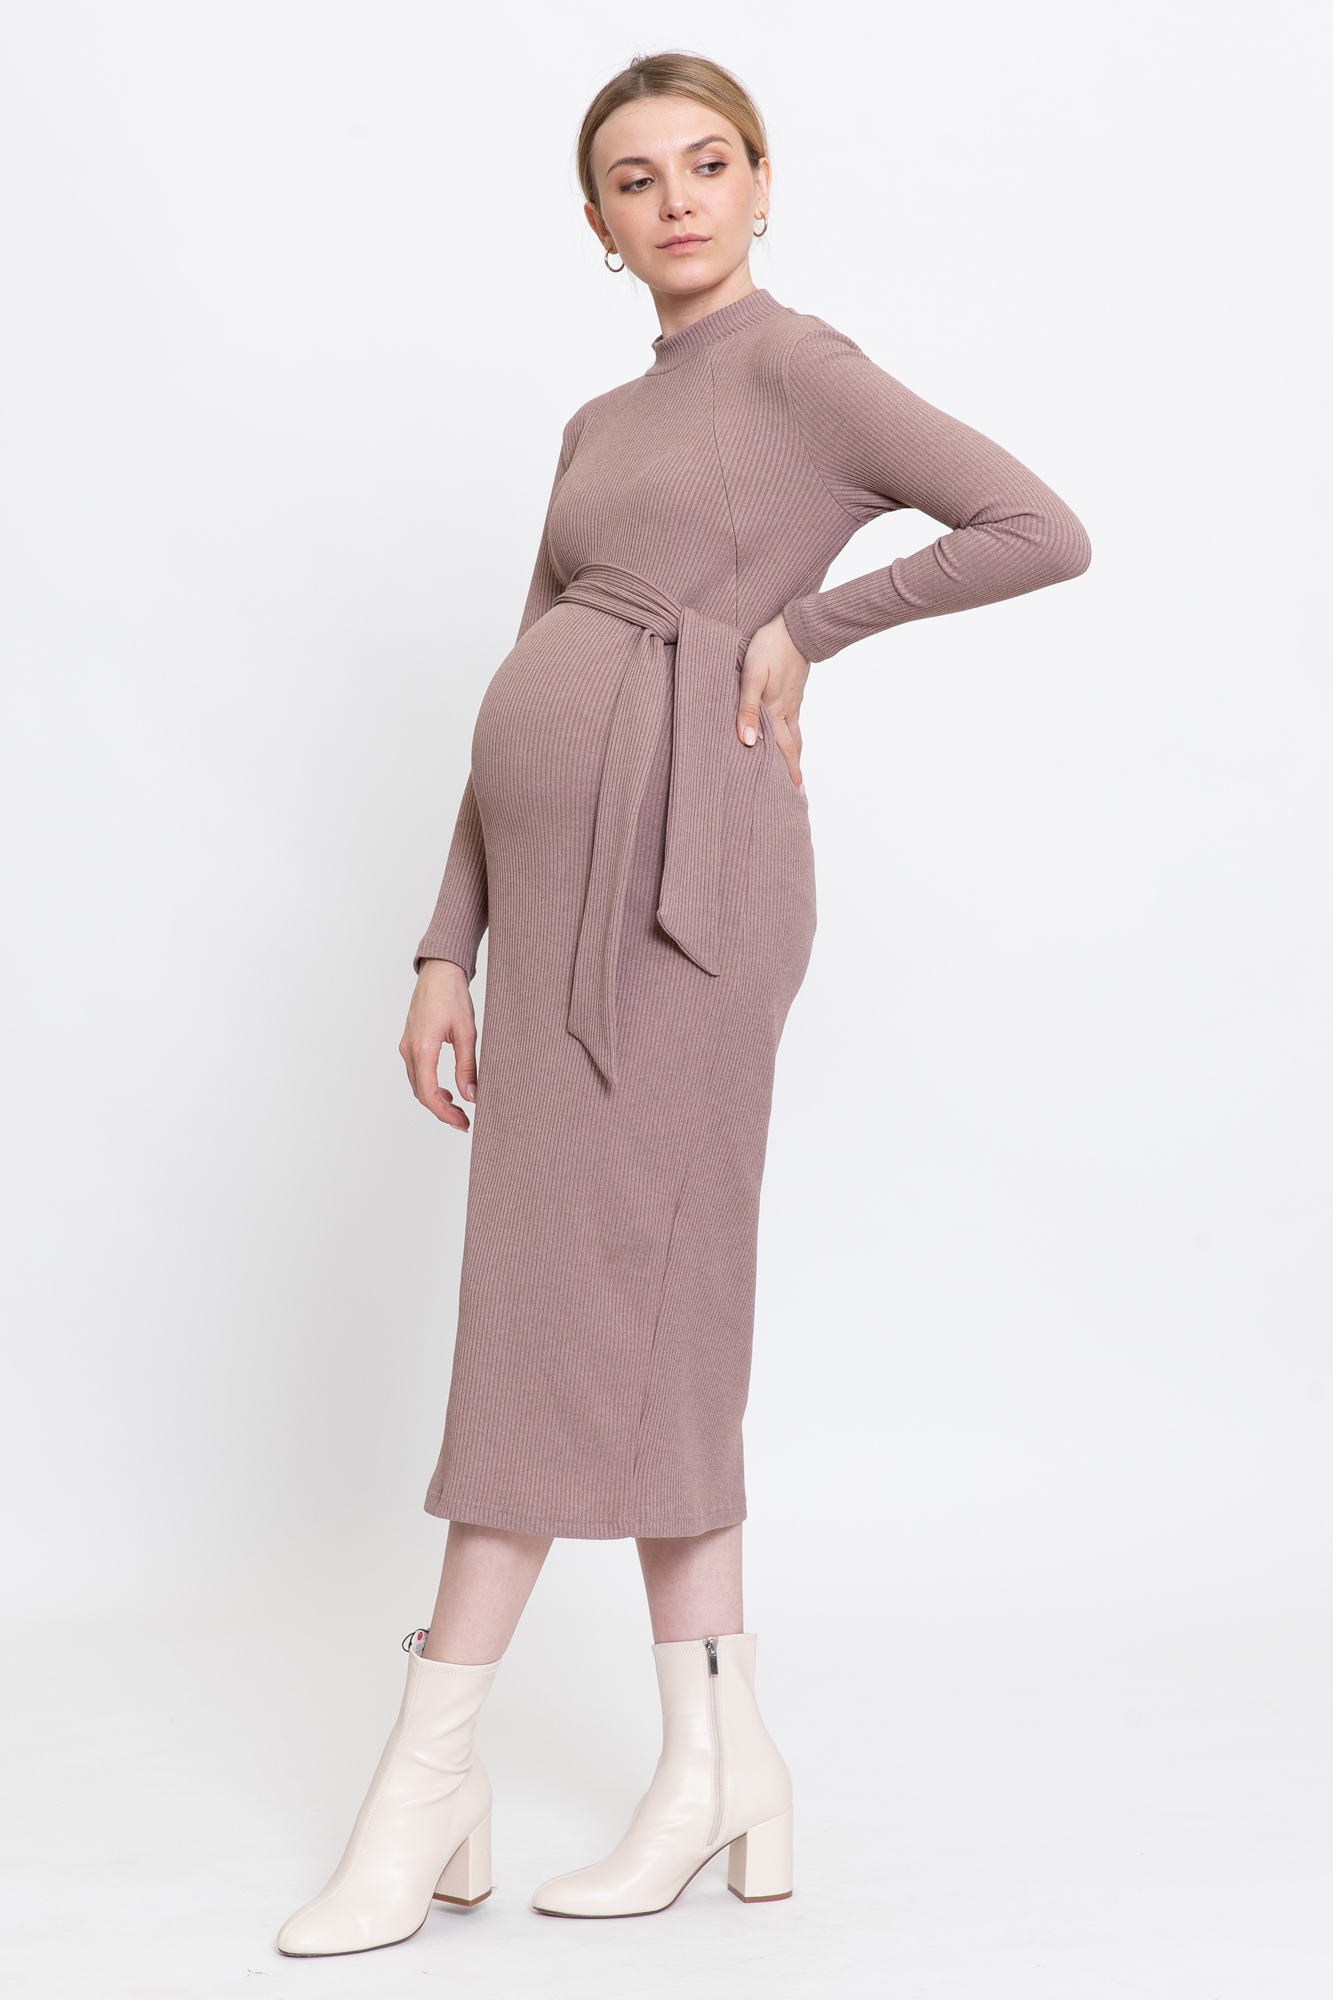 Платье для беременных женское 0178а коричневое 46 RU Magica bellezza. Цвет: коричневый